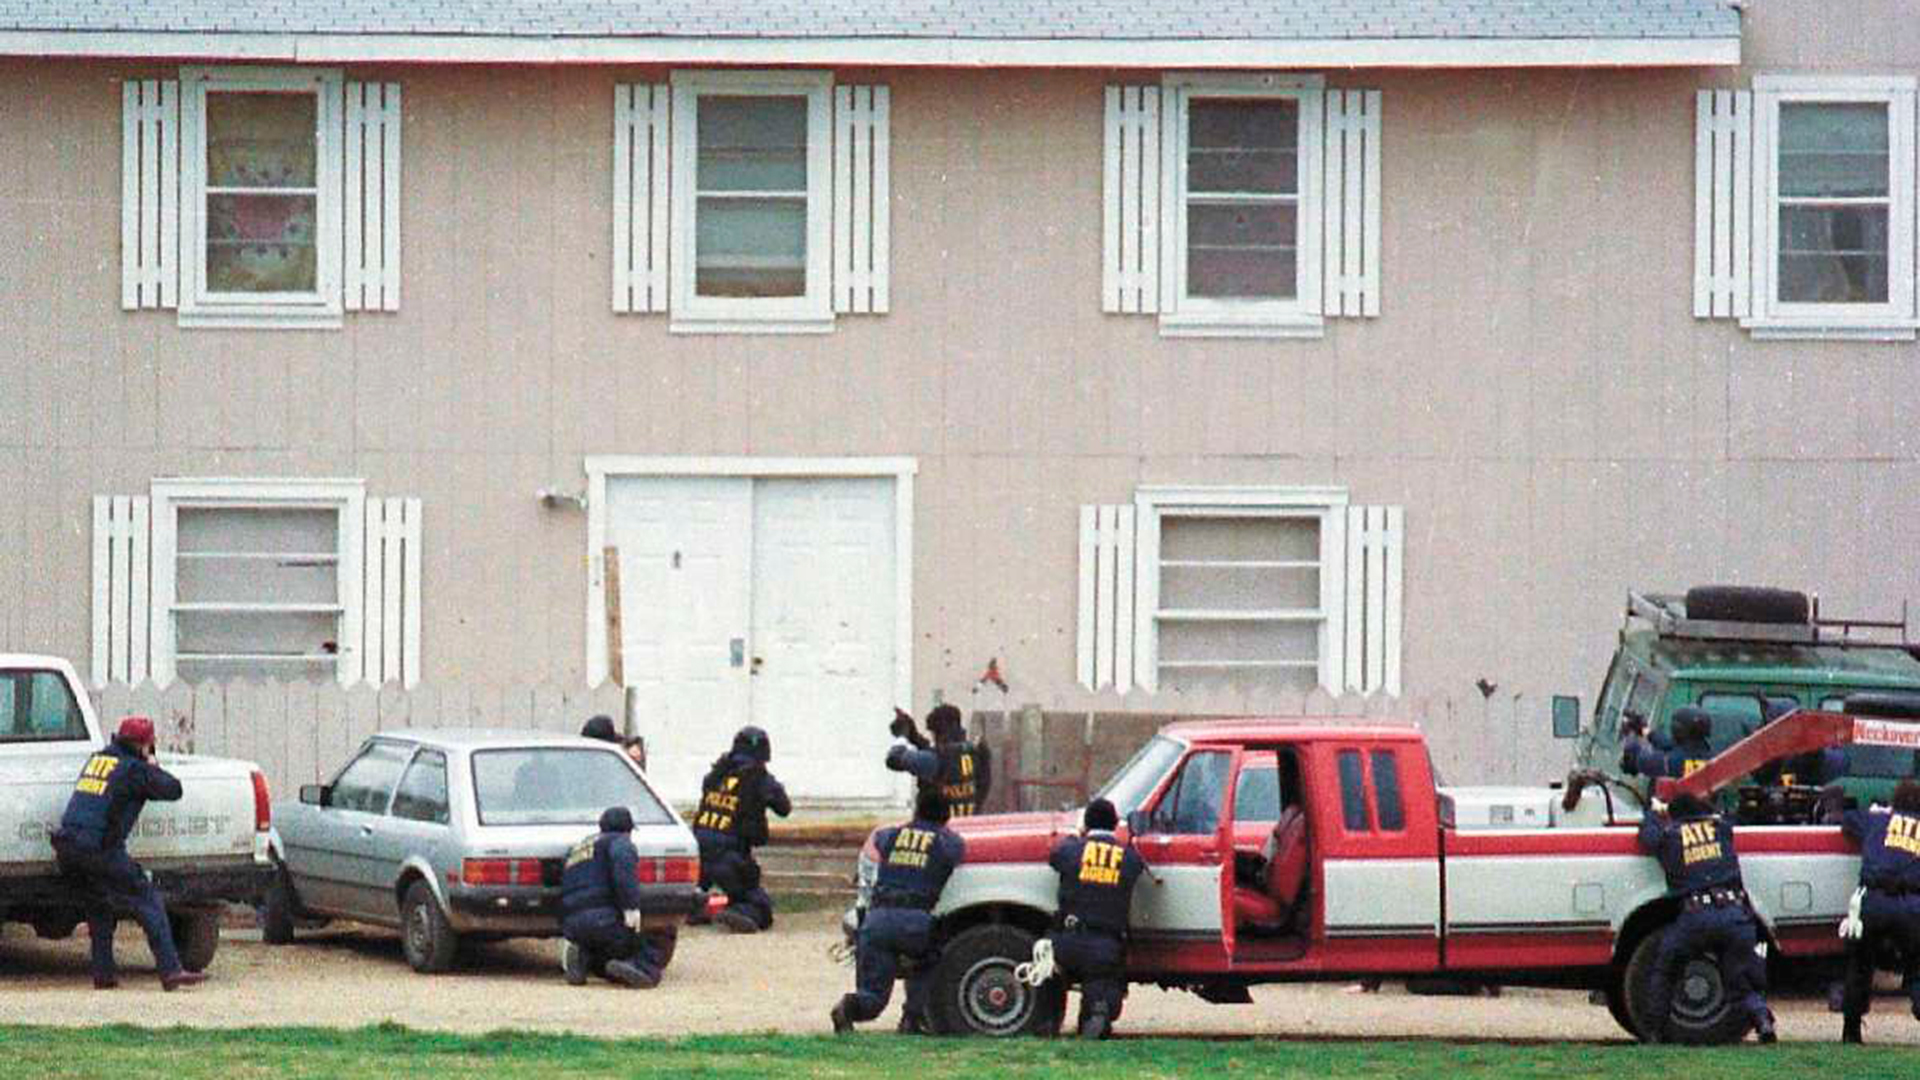 La policía rodeó la sede de los davidianos en Texas- tenían una orden de allanamiento por abuso de menores y tenencia de armas ilegales. Su líder se negó y comenzó el infierno (AP Photo/Waco Tribune Herald)